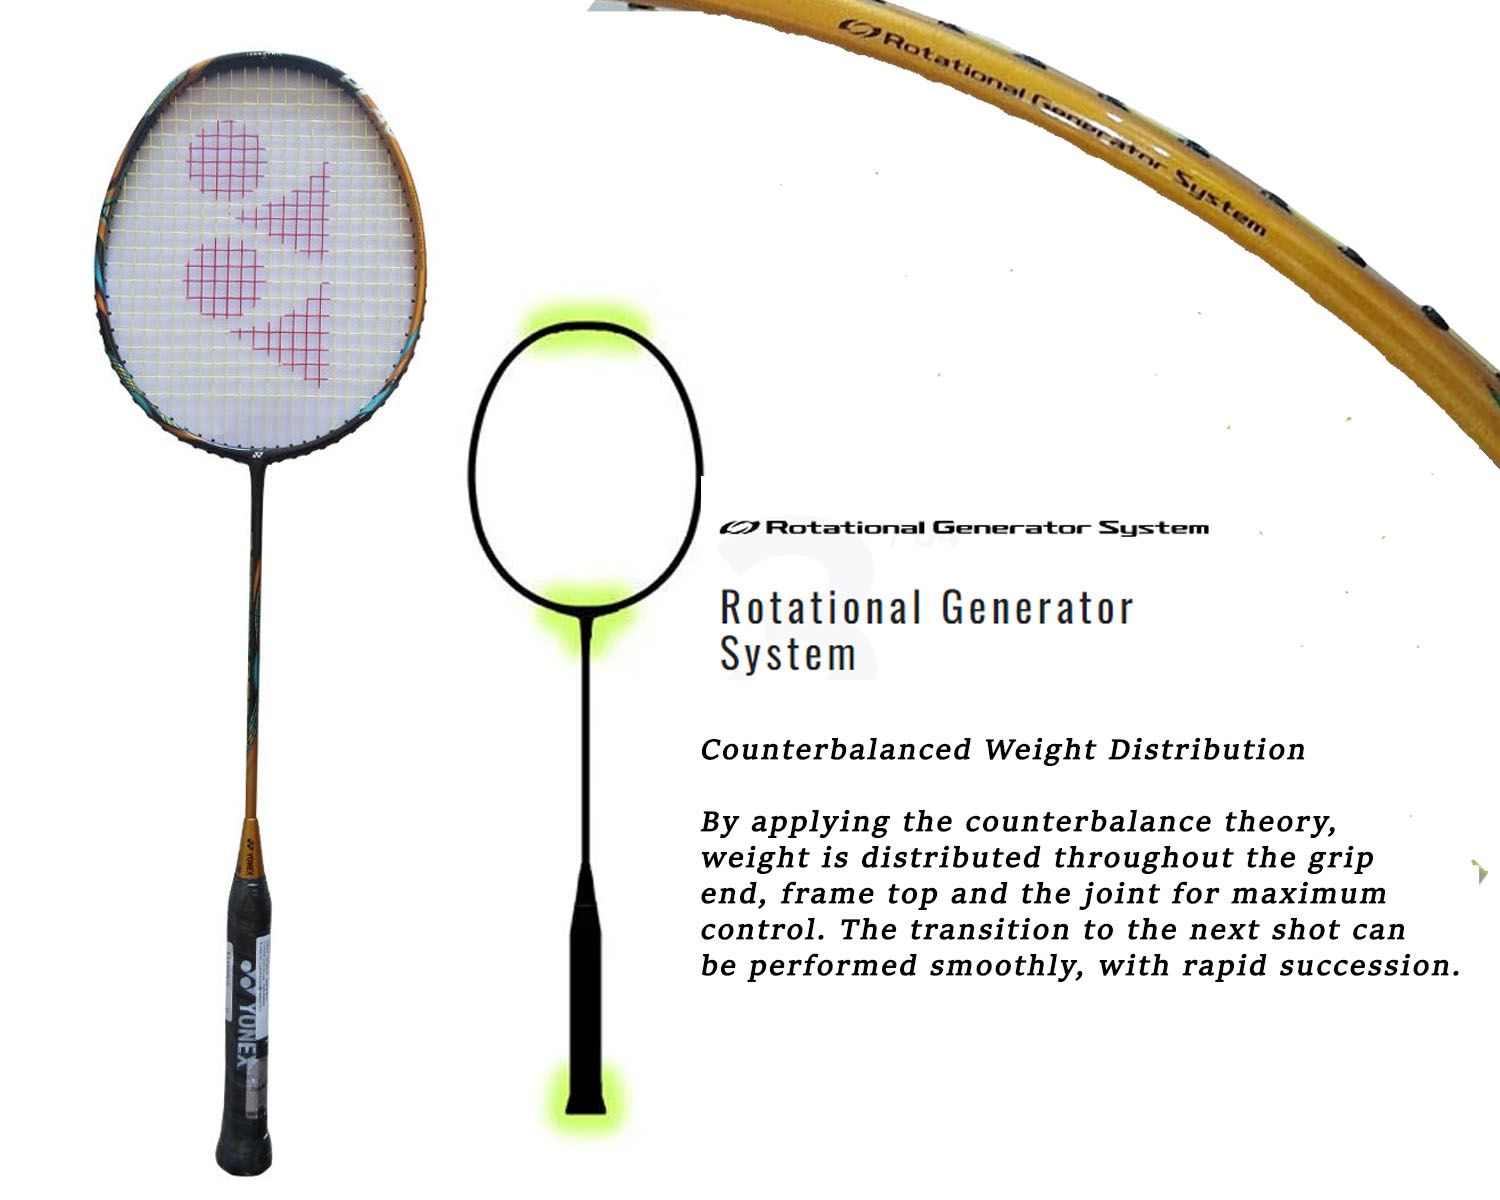 Yonex Astrox 88D Play Badminton Racket